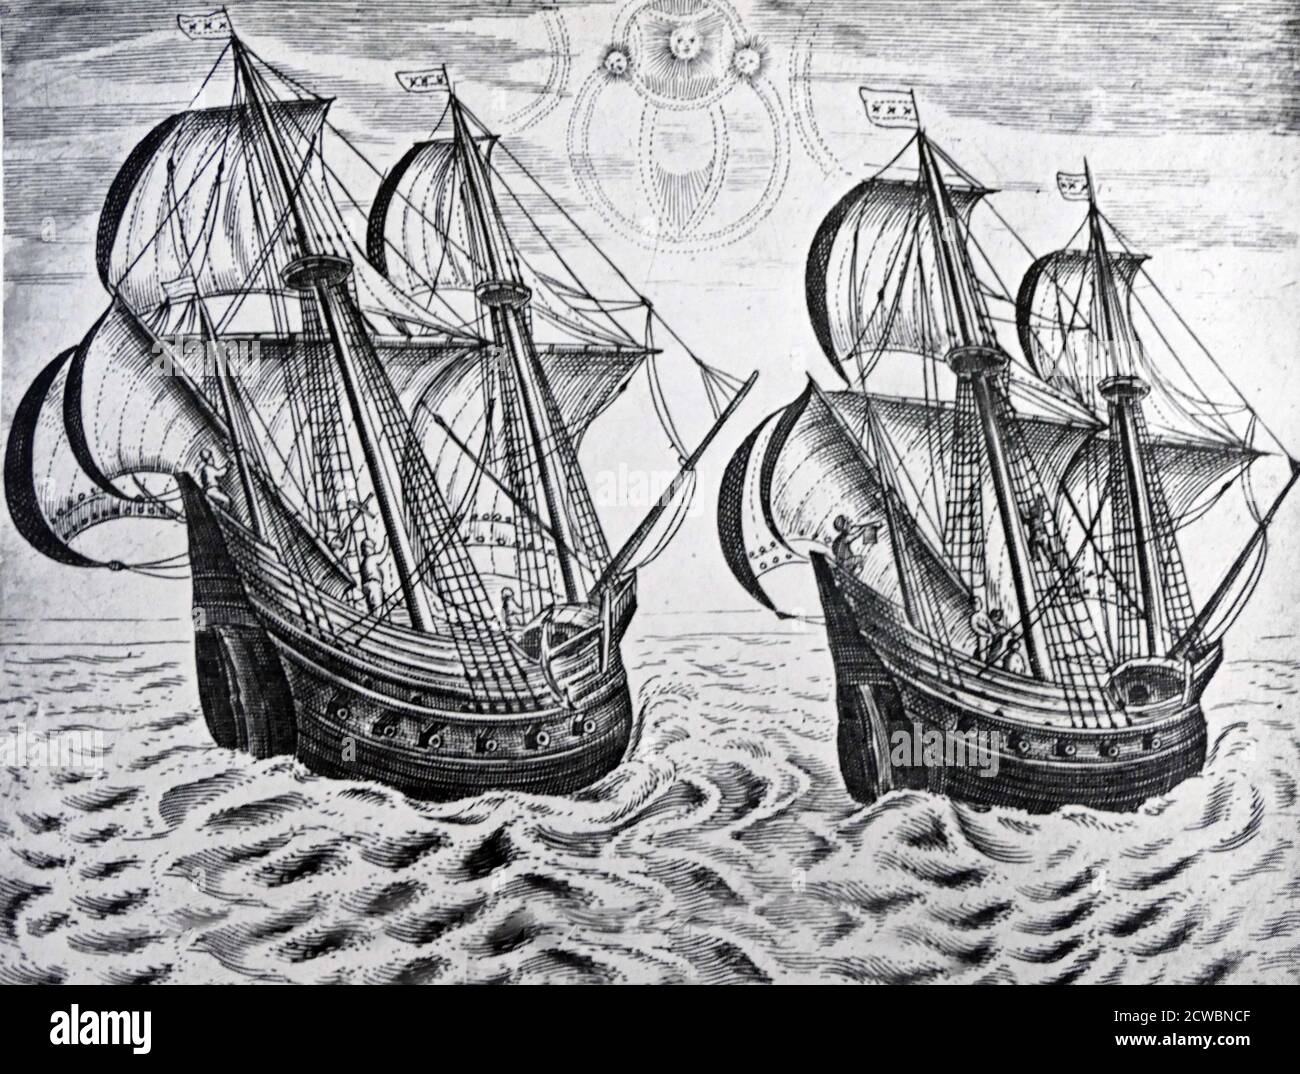 Illustration du voyage de William Barents en Chine 1596. Willem Barentsz (c. 1550 - 20 juin 1597), anglicisé sous le nom de William Barents ou Barentz, était un navigateur, cartographe et explorateur néerlandais. En 1596, le conseil municipal d'Amsterdam a acheté et équipé deux petits navires, chapetés par Jan Rijp et Jacob van Heemskerk, pour rechercher le canal insaisissable sous le commandement de Barentsz. Banque D'Images